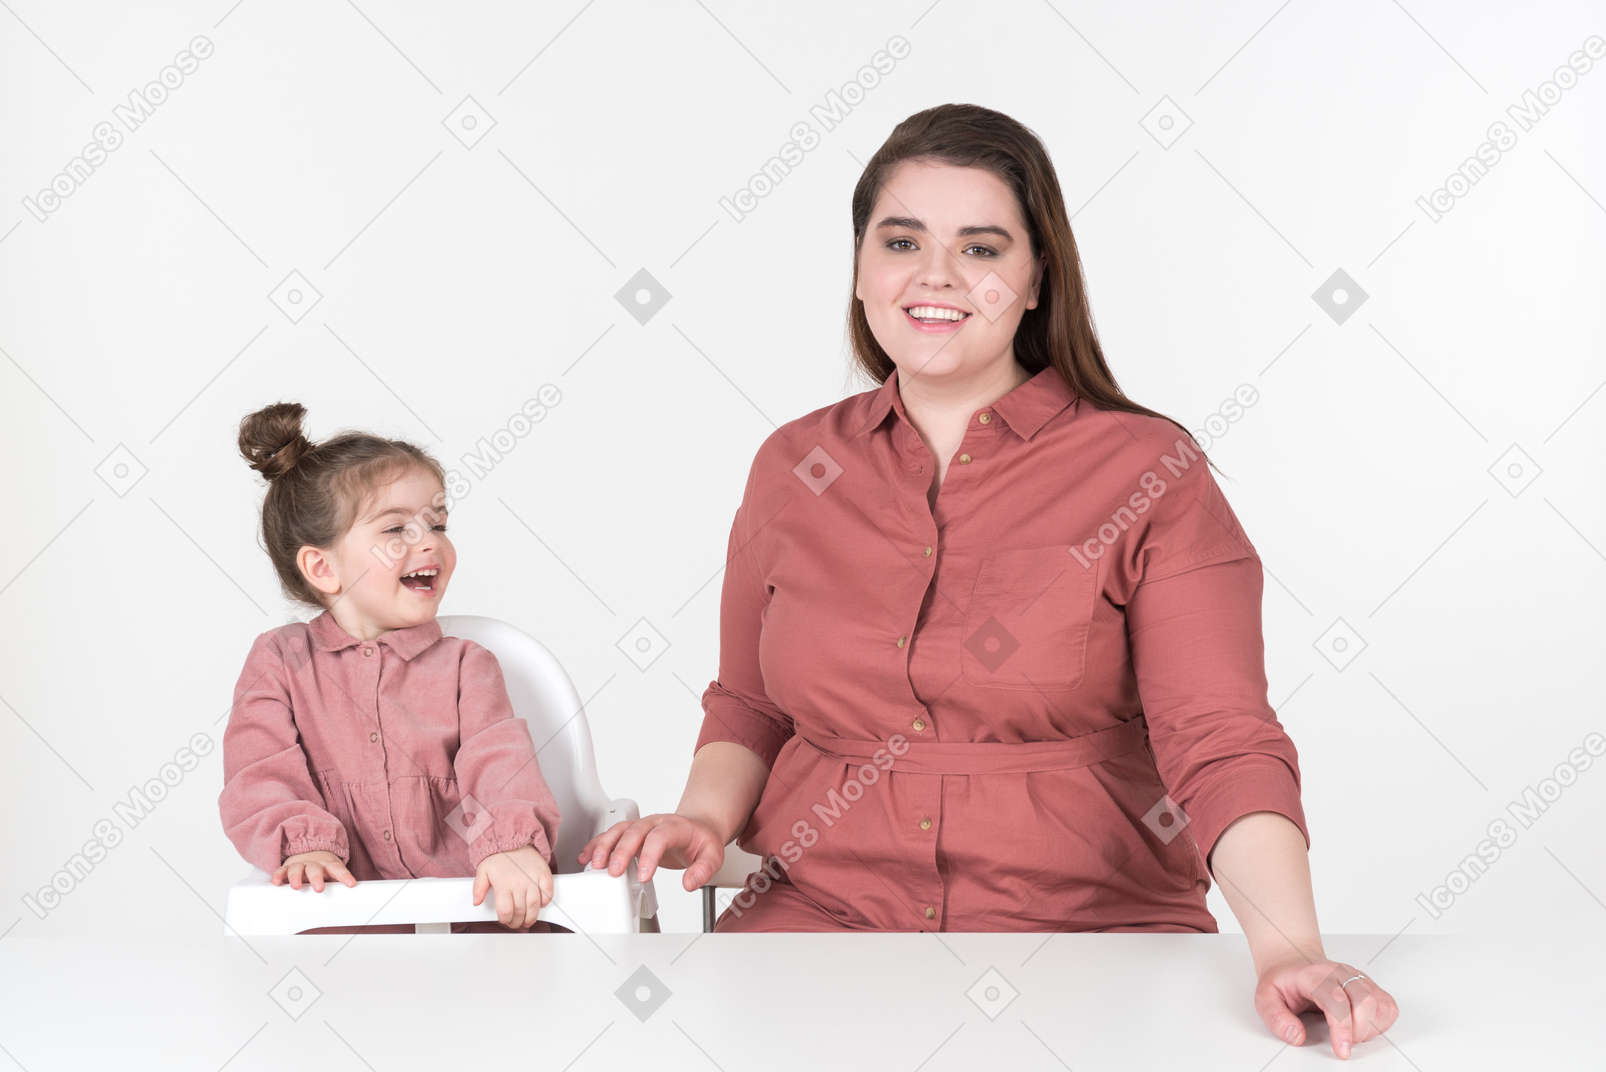 La mamma e la figlia piccola, con indosso abiti rossi e rosa, si divertono a tavola